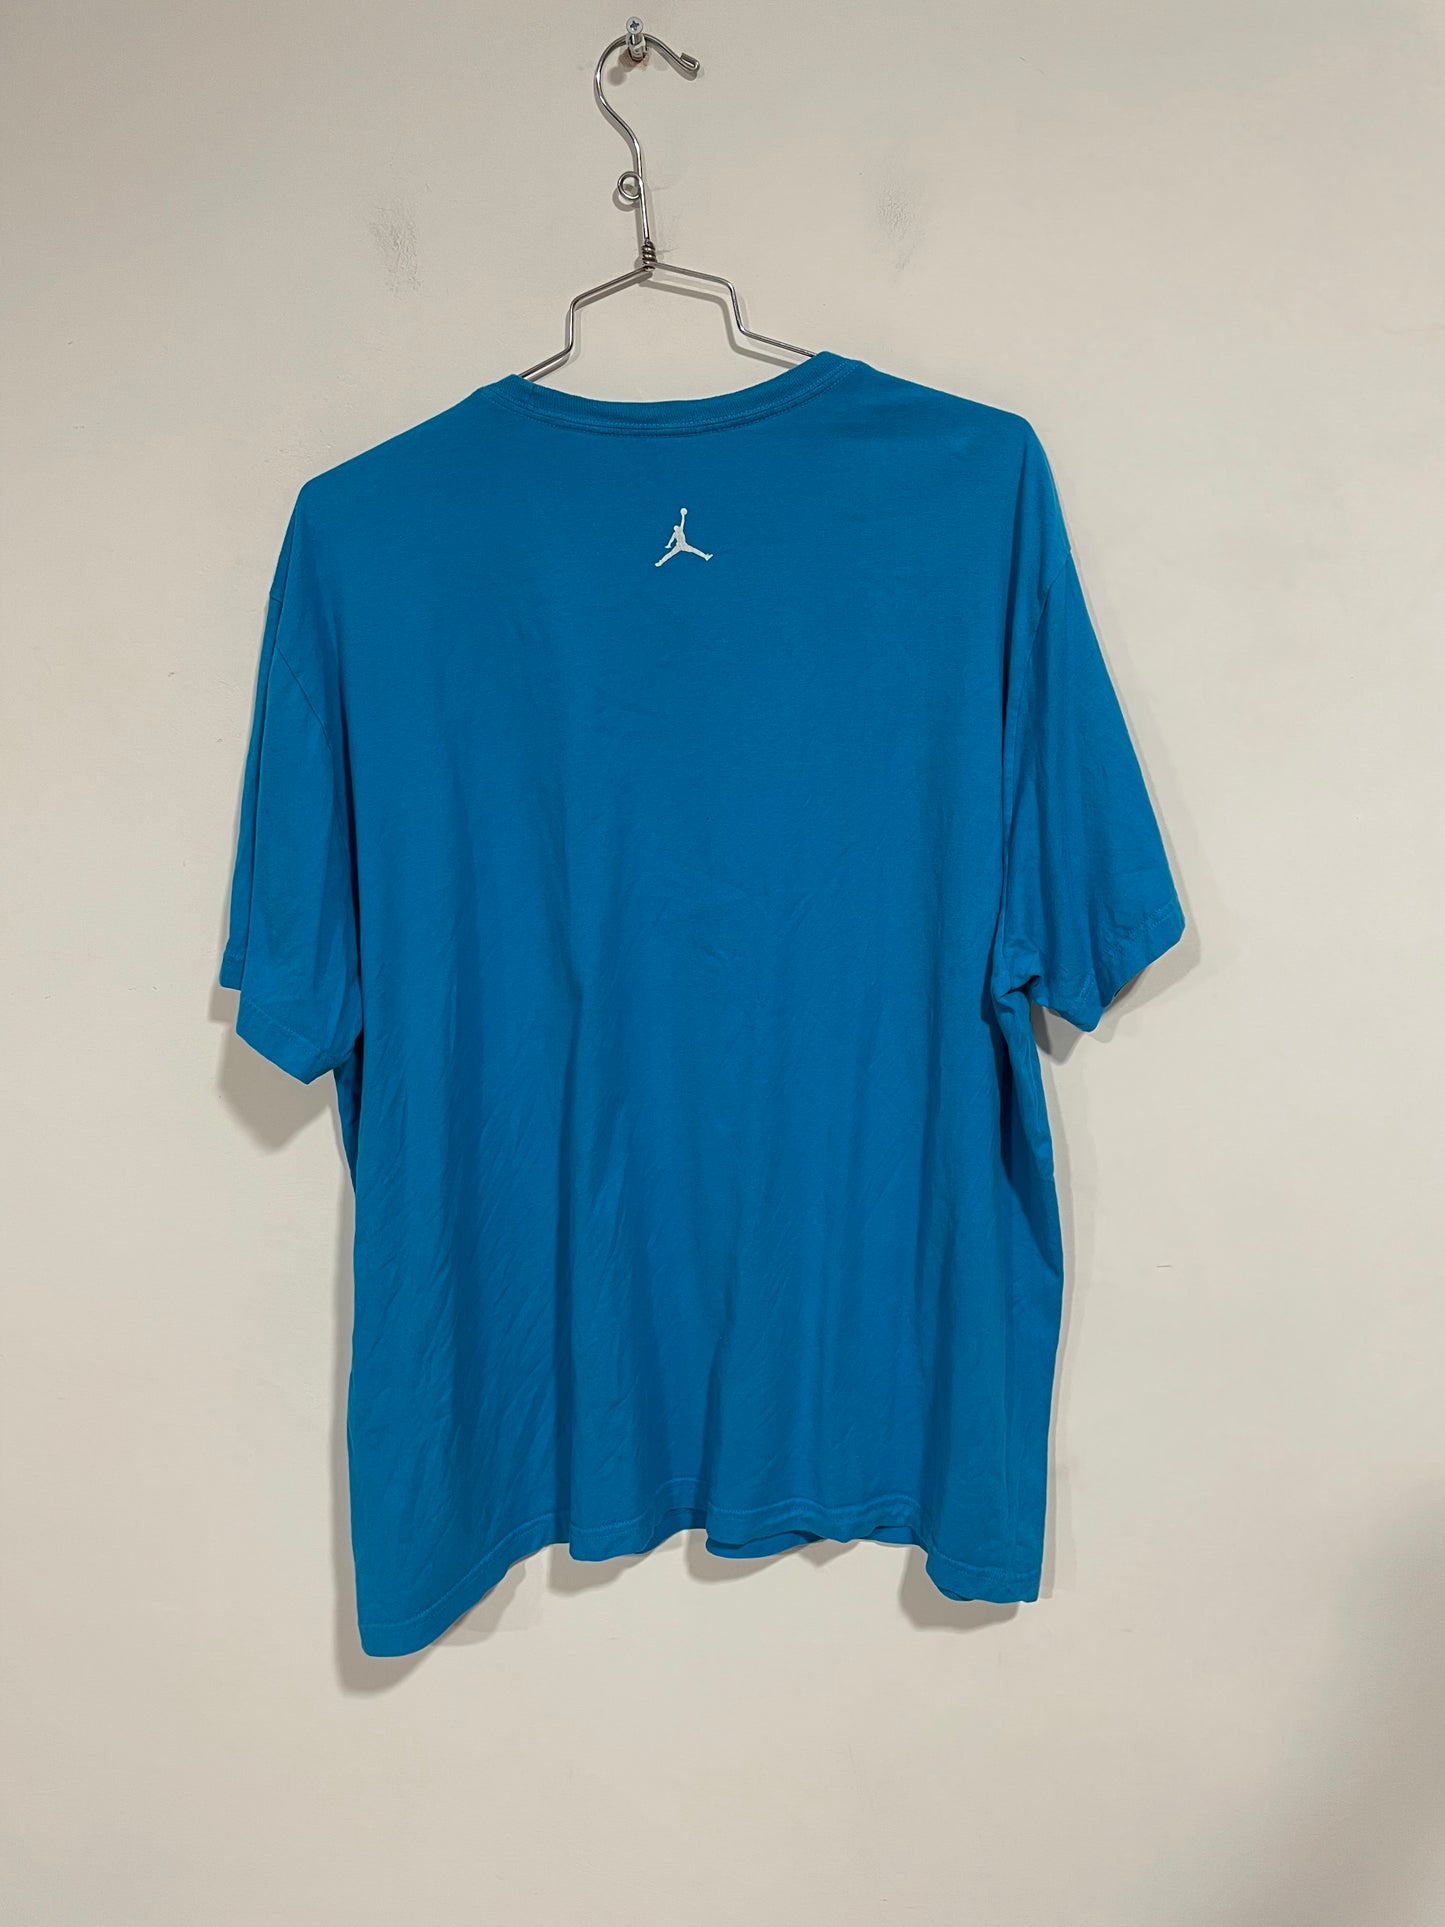 T shirt Jordan vintage azzurra (D275)